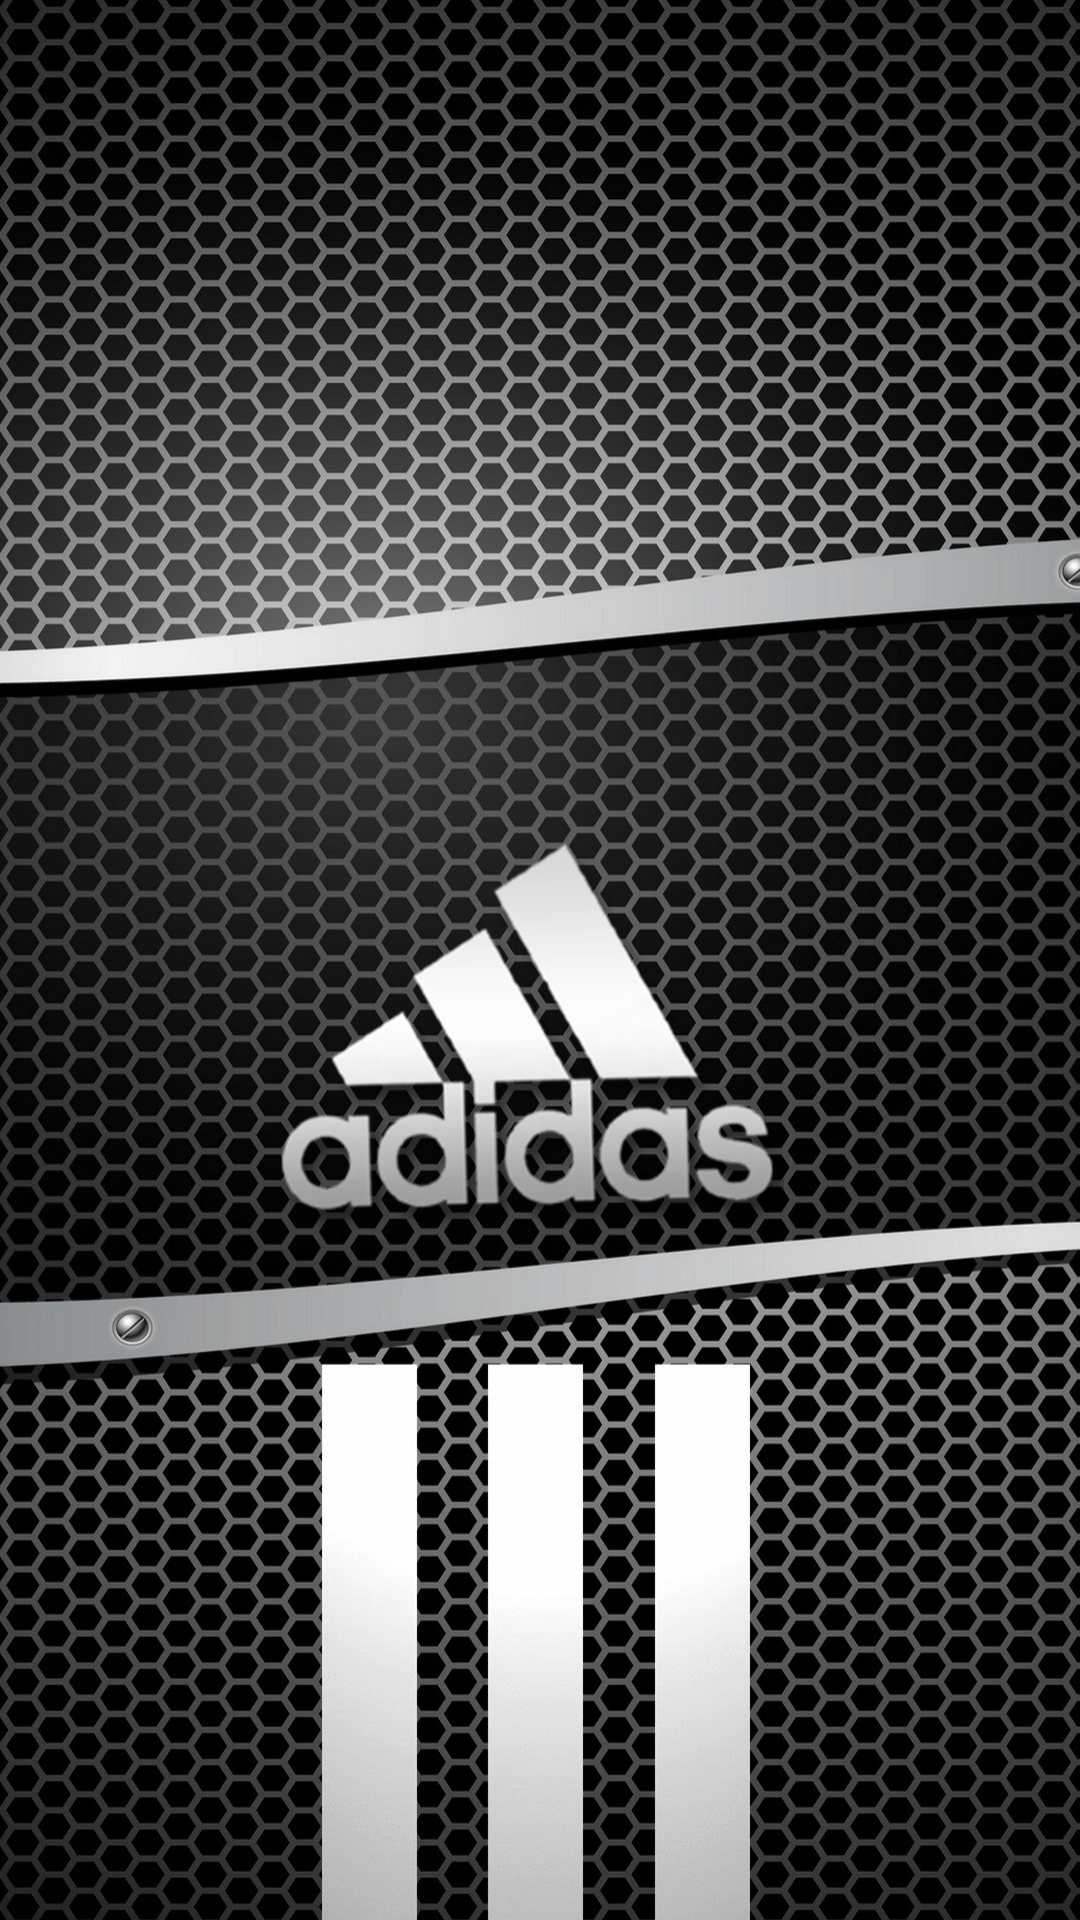 Wallpaper.wiki Adidas IPhone Logo Wallpaper PIC WPC0014225